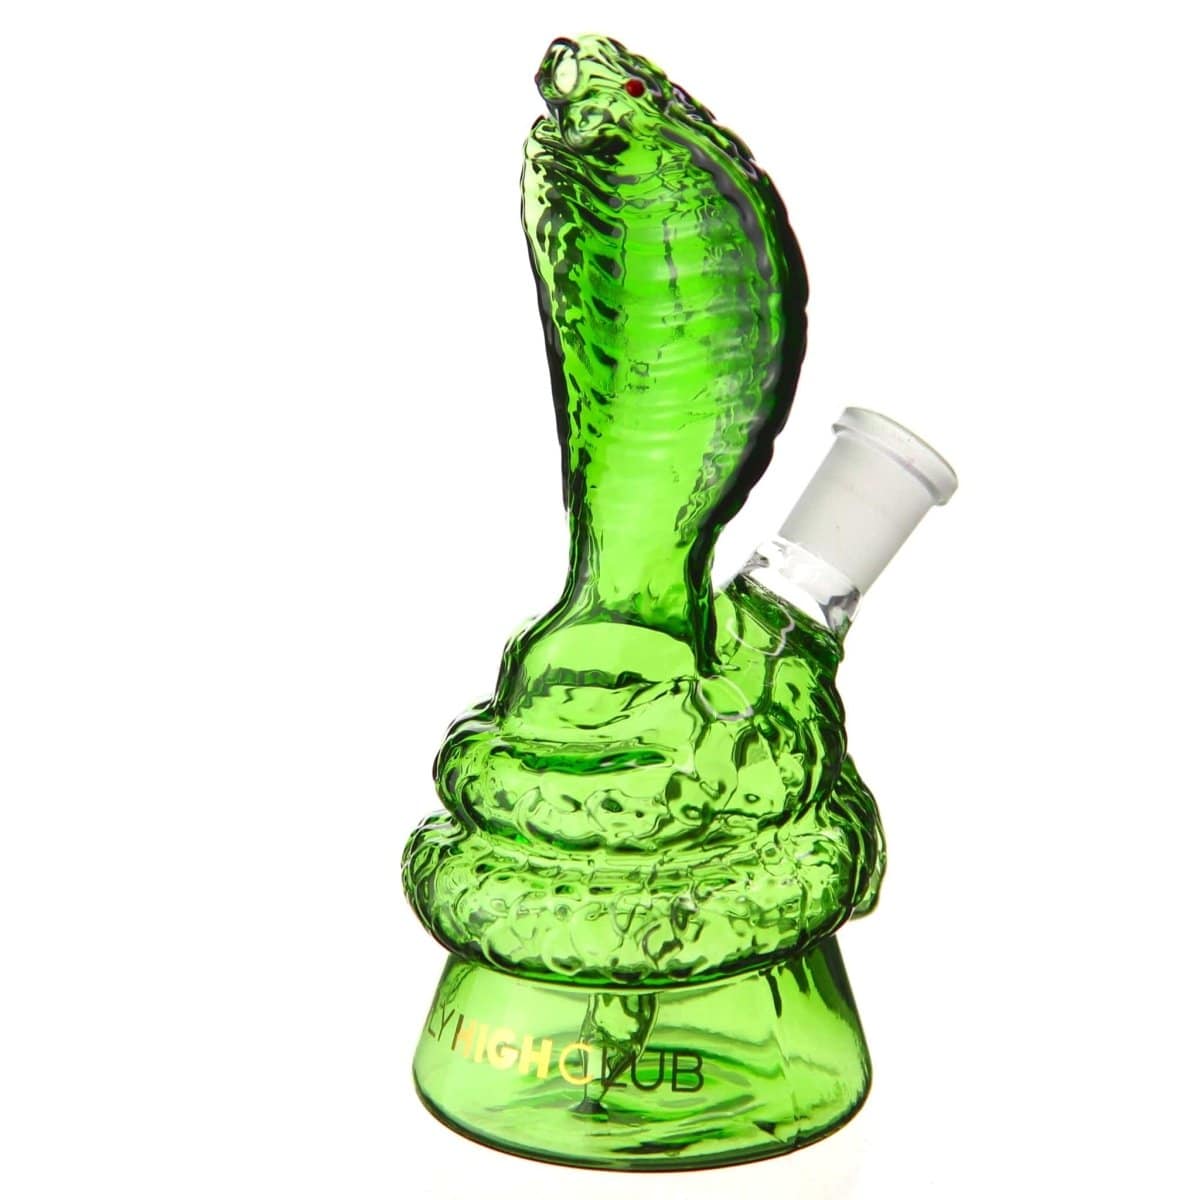 Daily High Club Glass Daily High Club "Green Mamba Snake" Bong